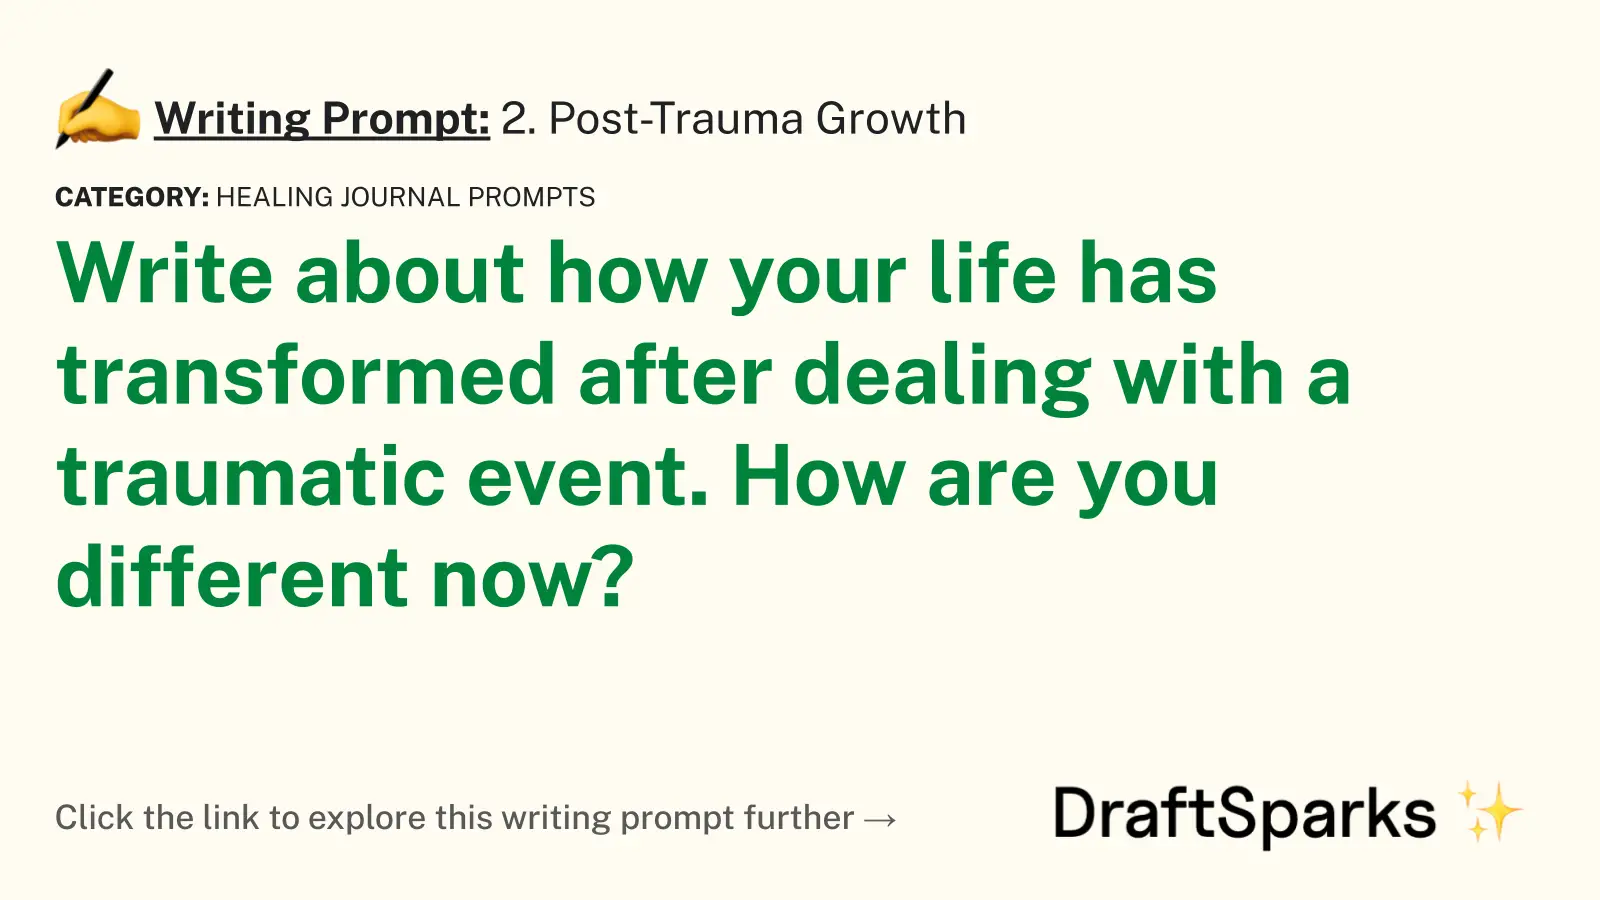 2. Post-Trauma Growth